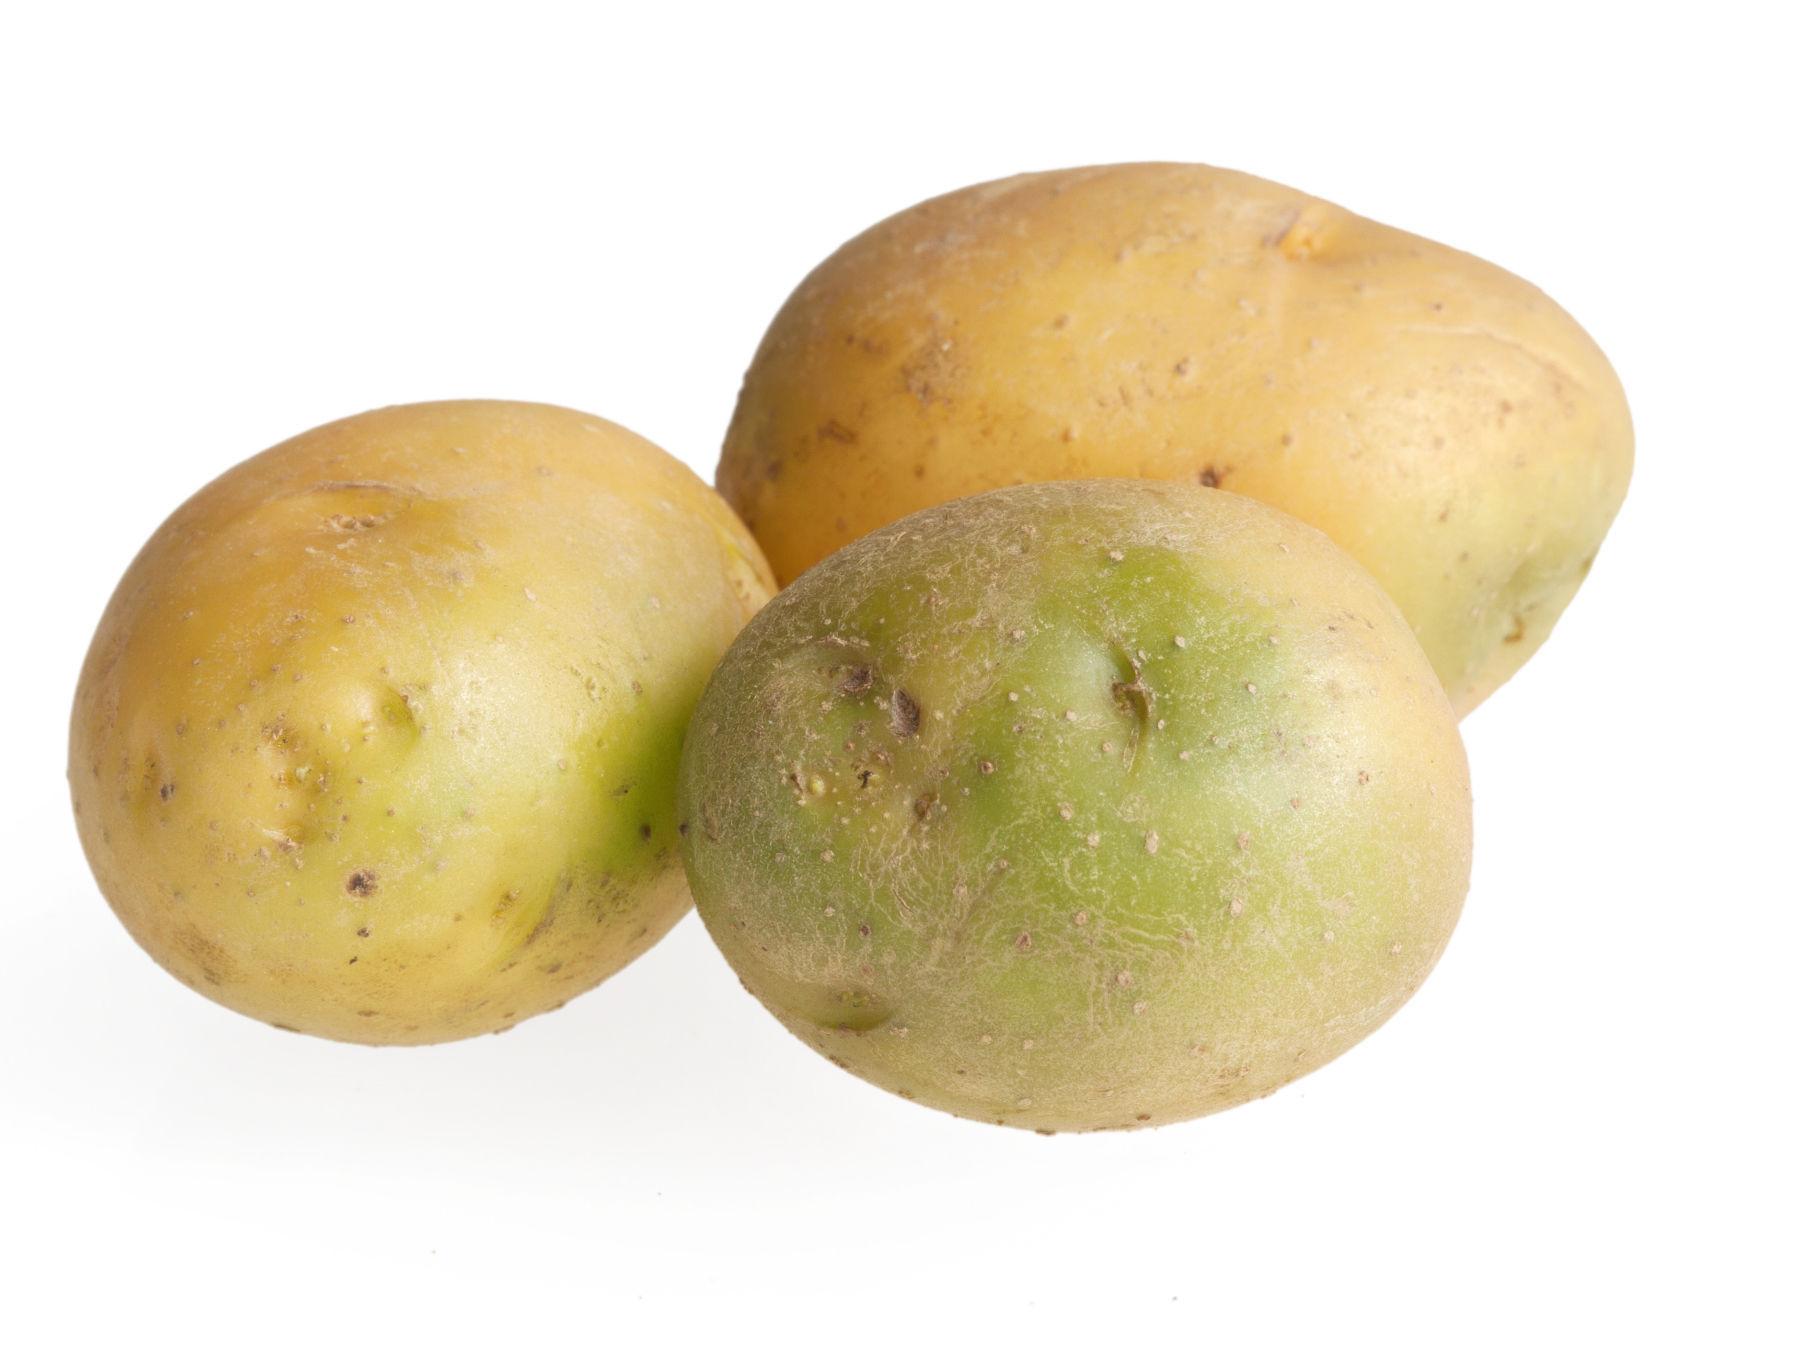 KAST: Grønne poteter som smaker bittert bør du kaste, ifølge potetforsker Molteberg. Foto: Shutterstock